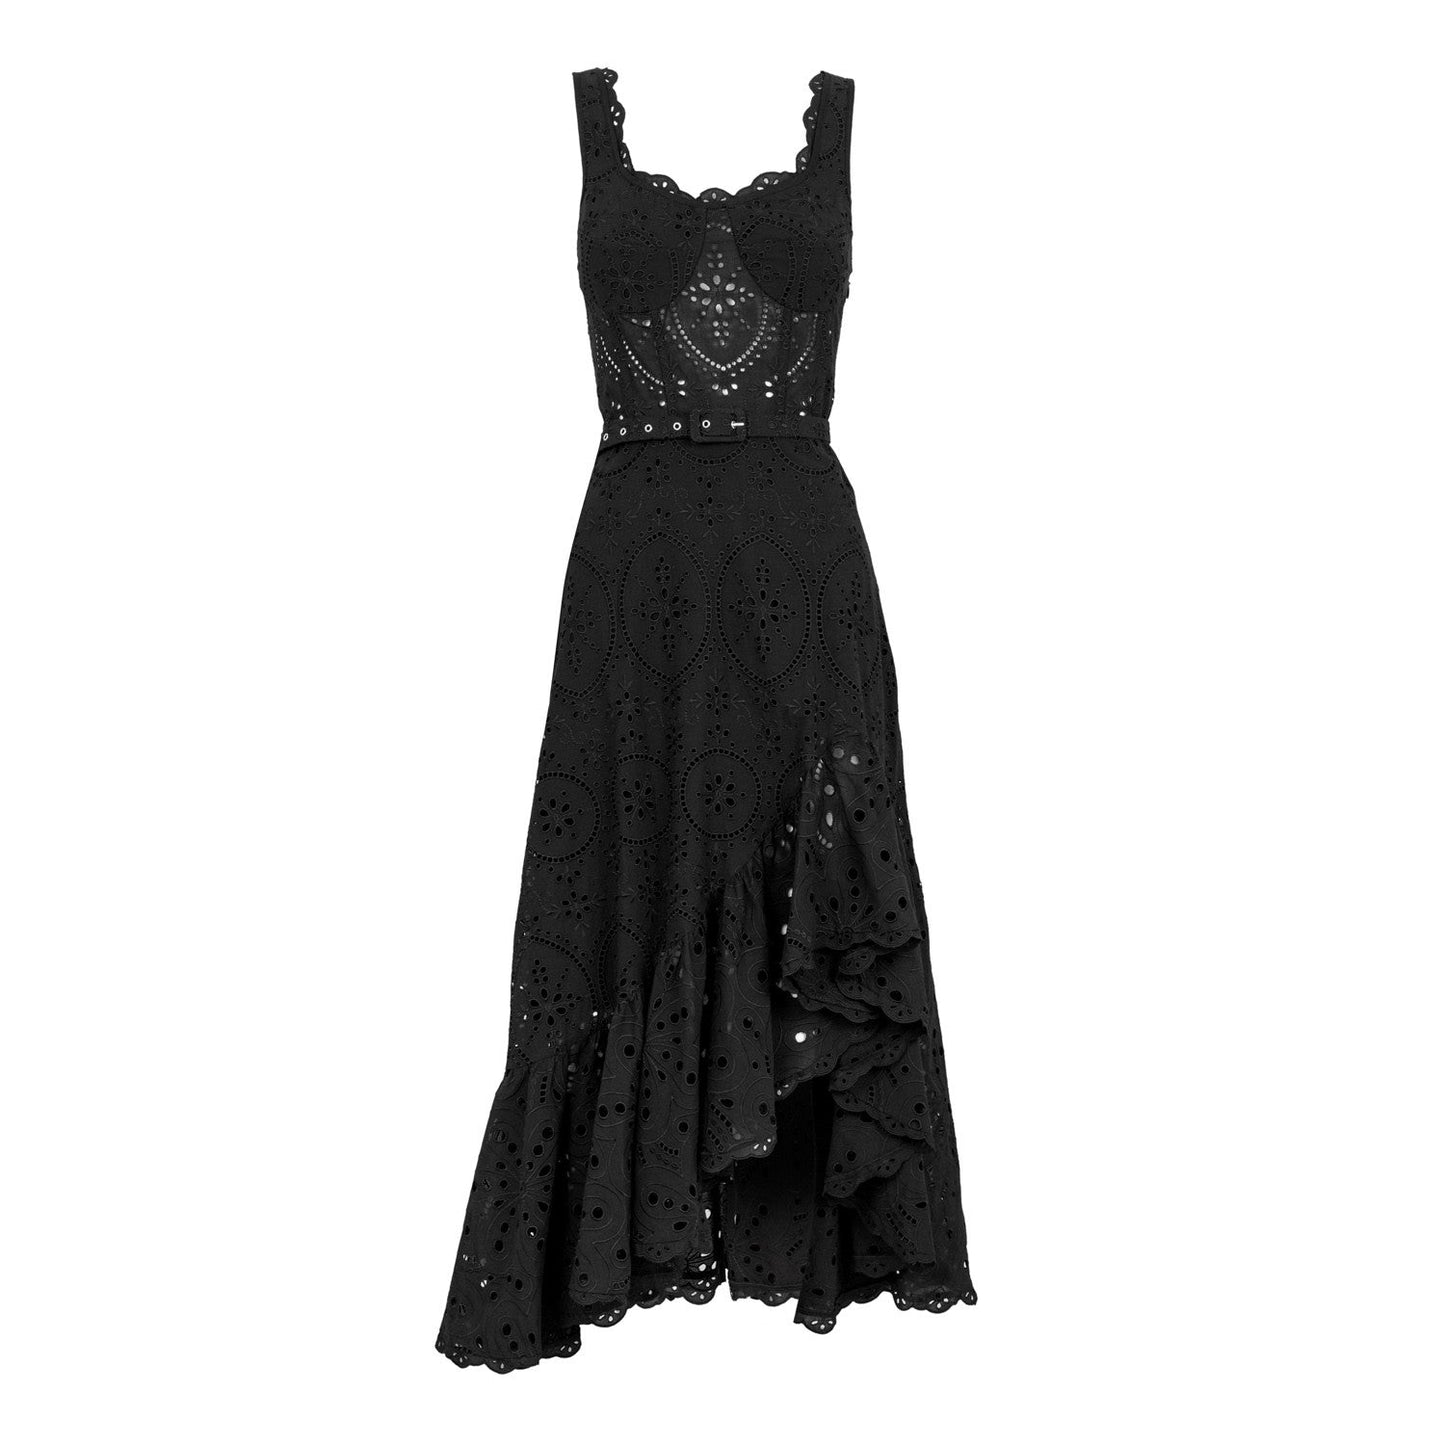 Charo Ruiz Tatyana Dress - Premium Long dress from Marina St Barth - Just $795.00! Shop now at Marina St Barth